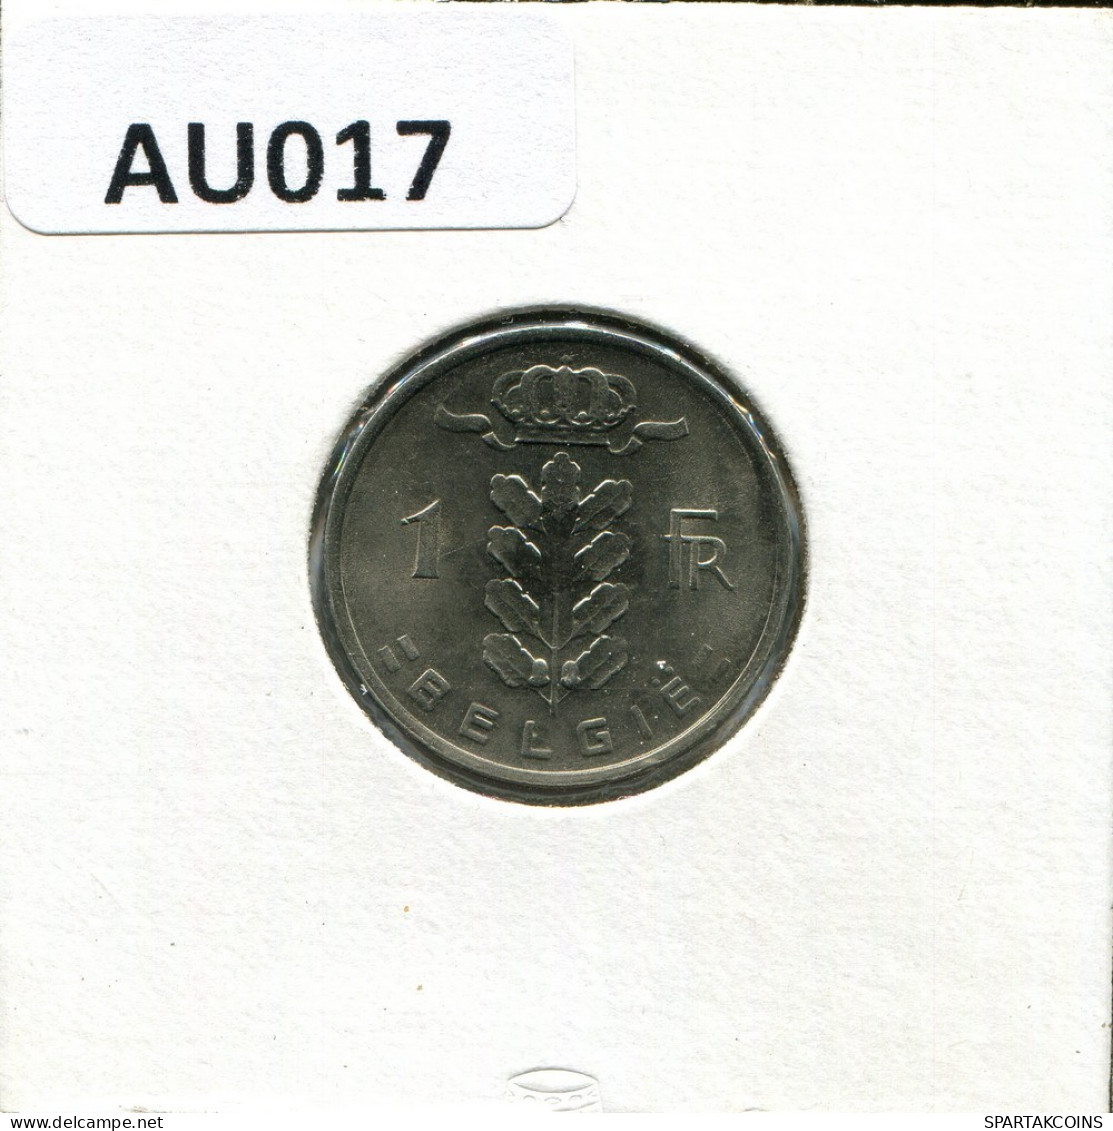 1 FRANC 1979 DUTCH Text BELGIUM Coin #AU017.U.A - 1 Franc